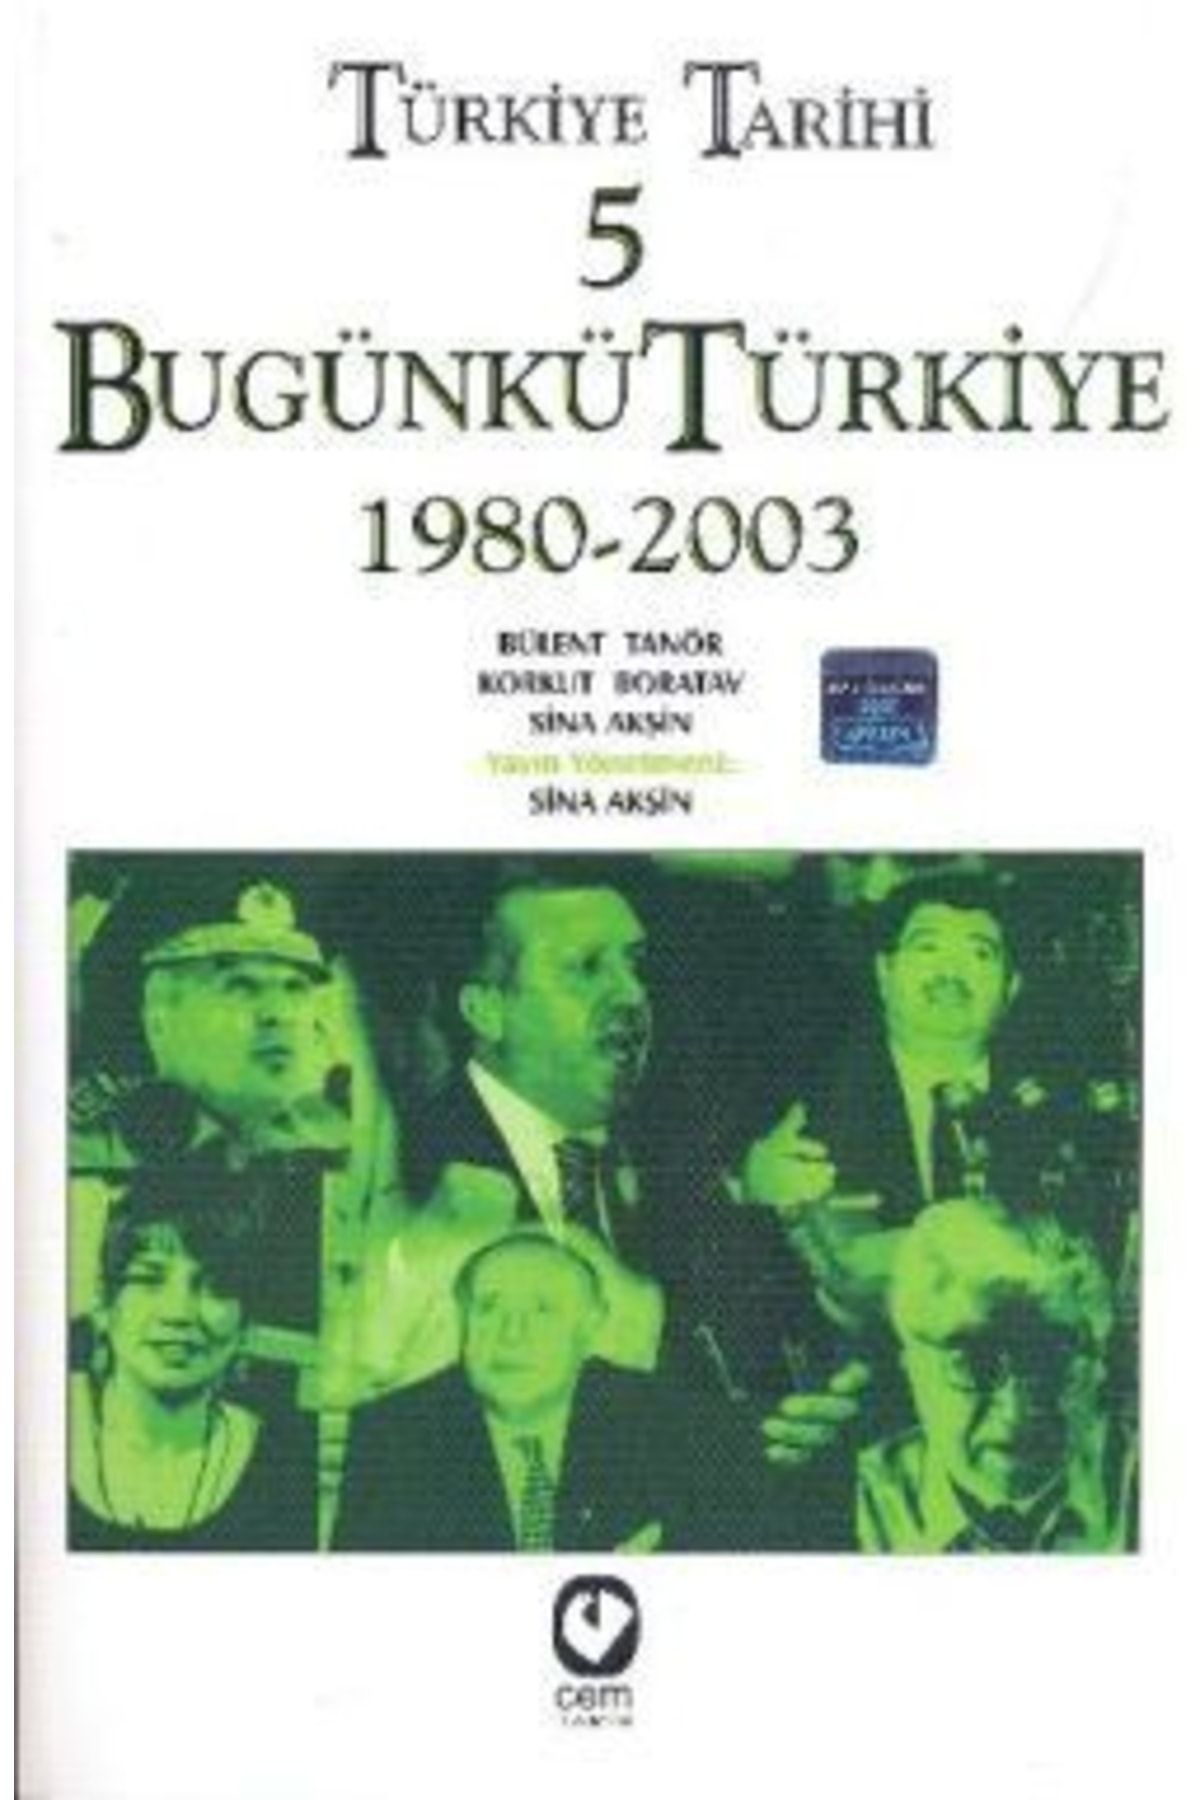 Türkiye İş Bankası Kültür Yayınları Türkiye Tarihi 5 Bugünkü Türkiye 1980 - 2003 kitabı - Sina Akşin - Cem Yayınevi